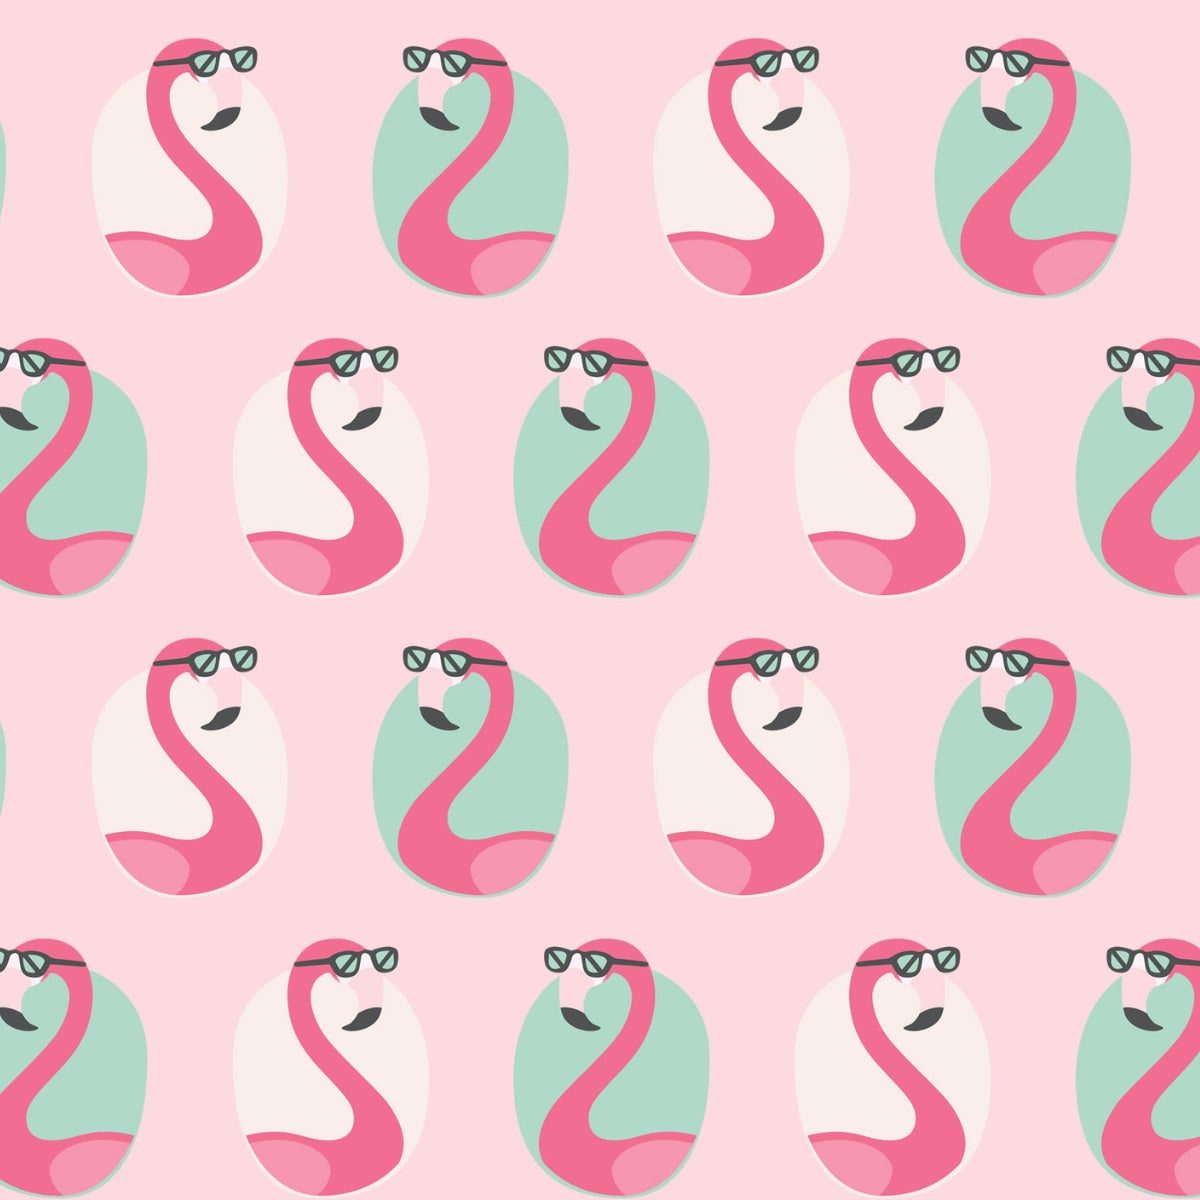 Cool Flamingo - Minky Blanket